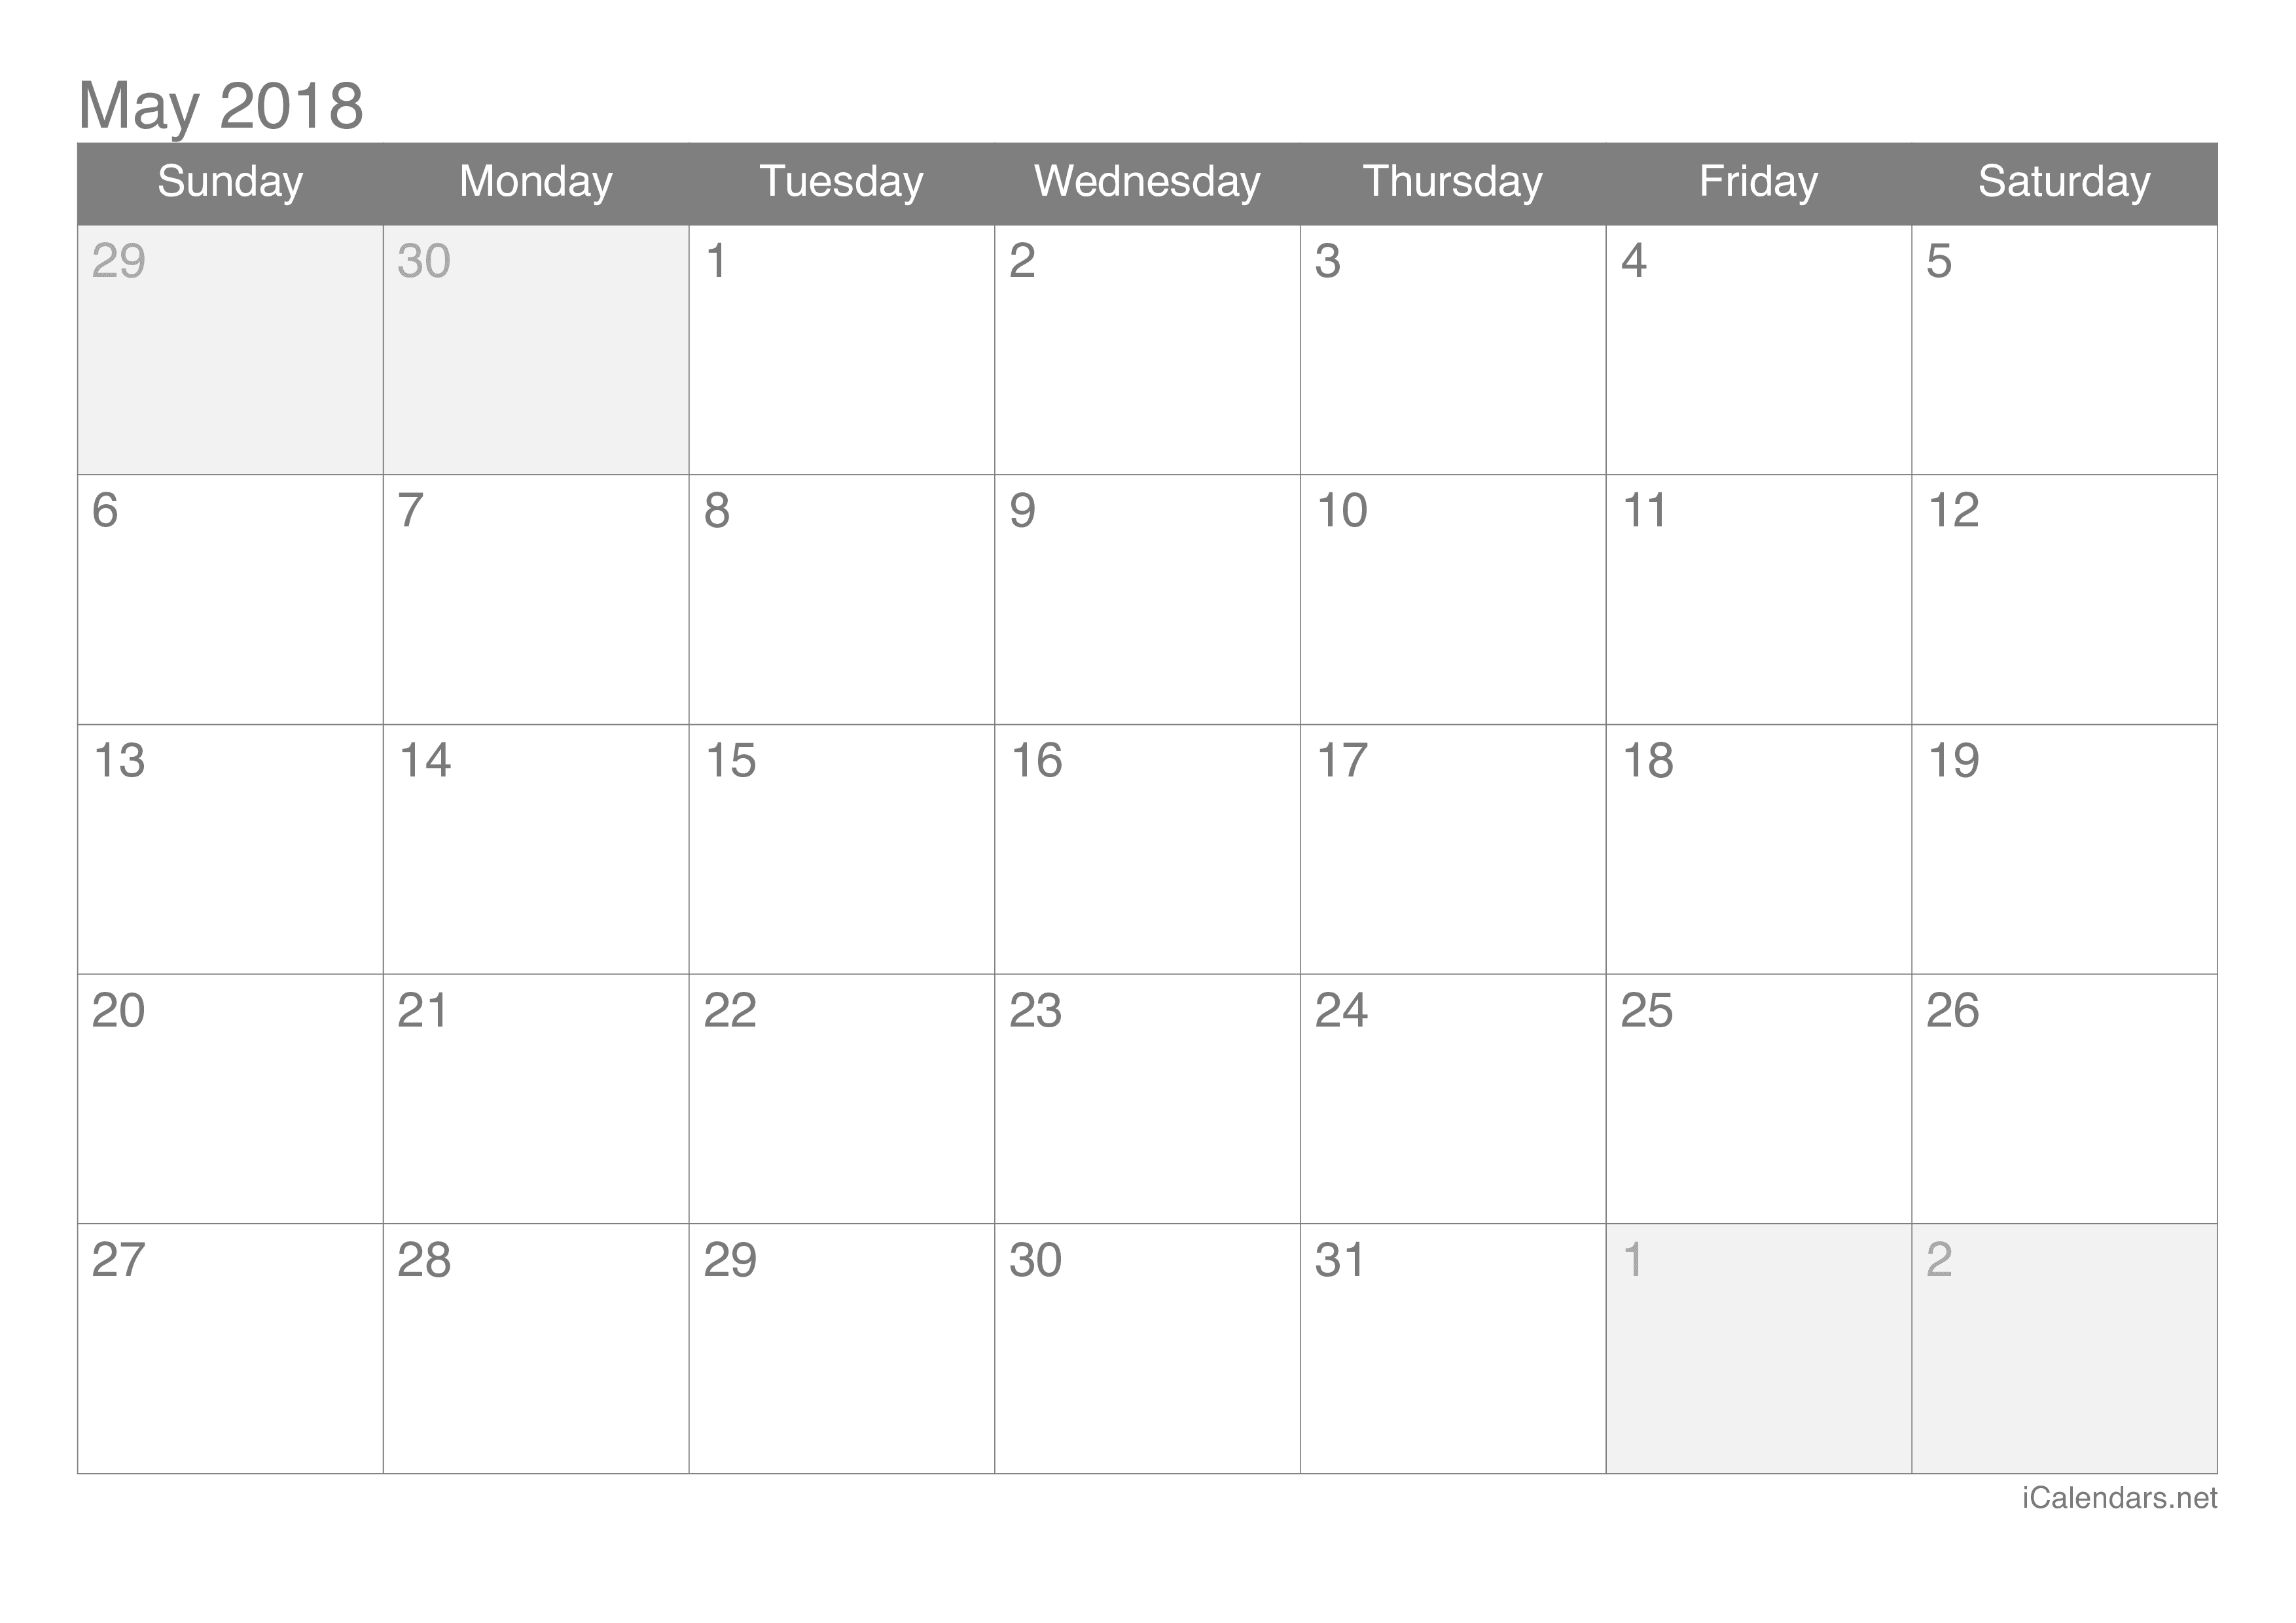 May 2018 Calendar Editable Template E1522648292427